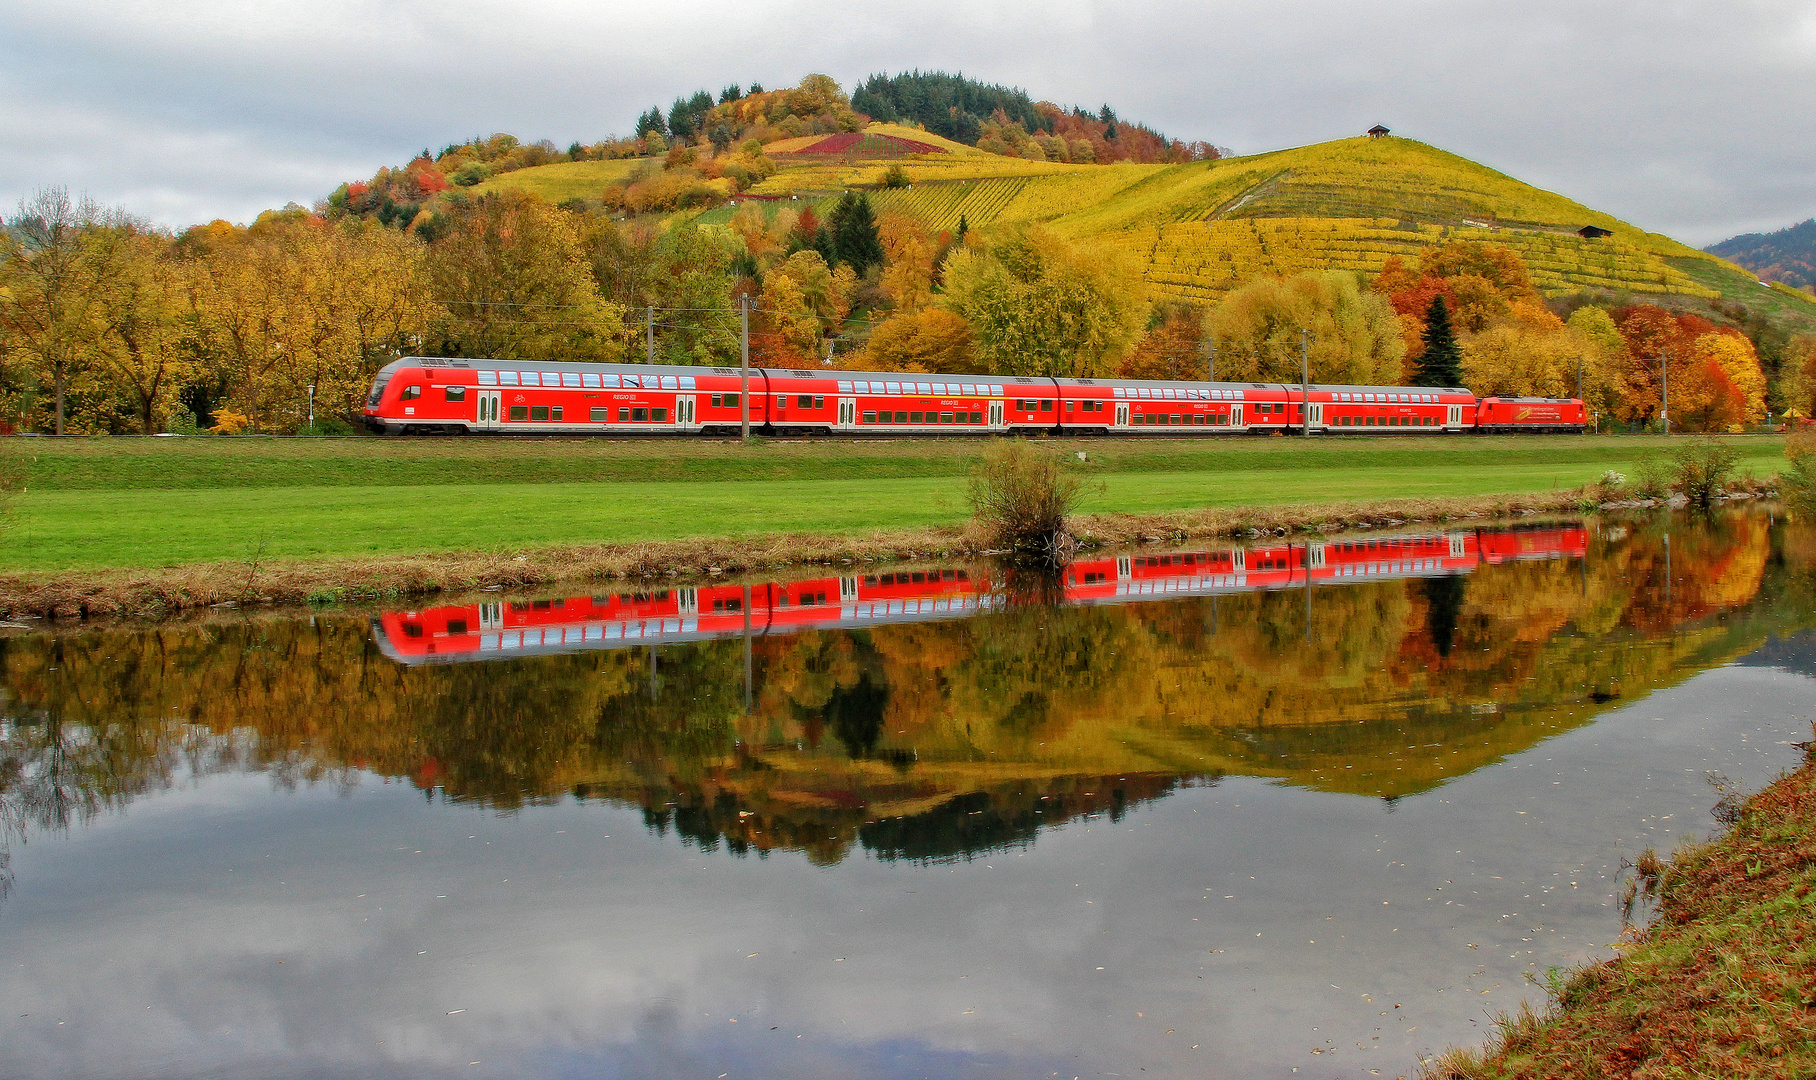 Scharzwaldbahn